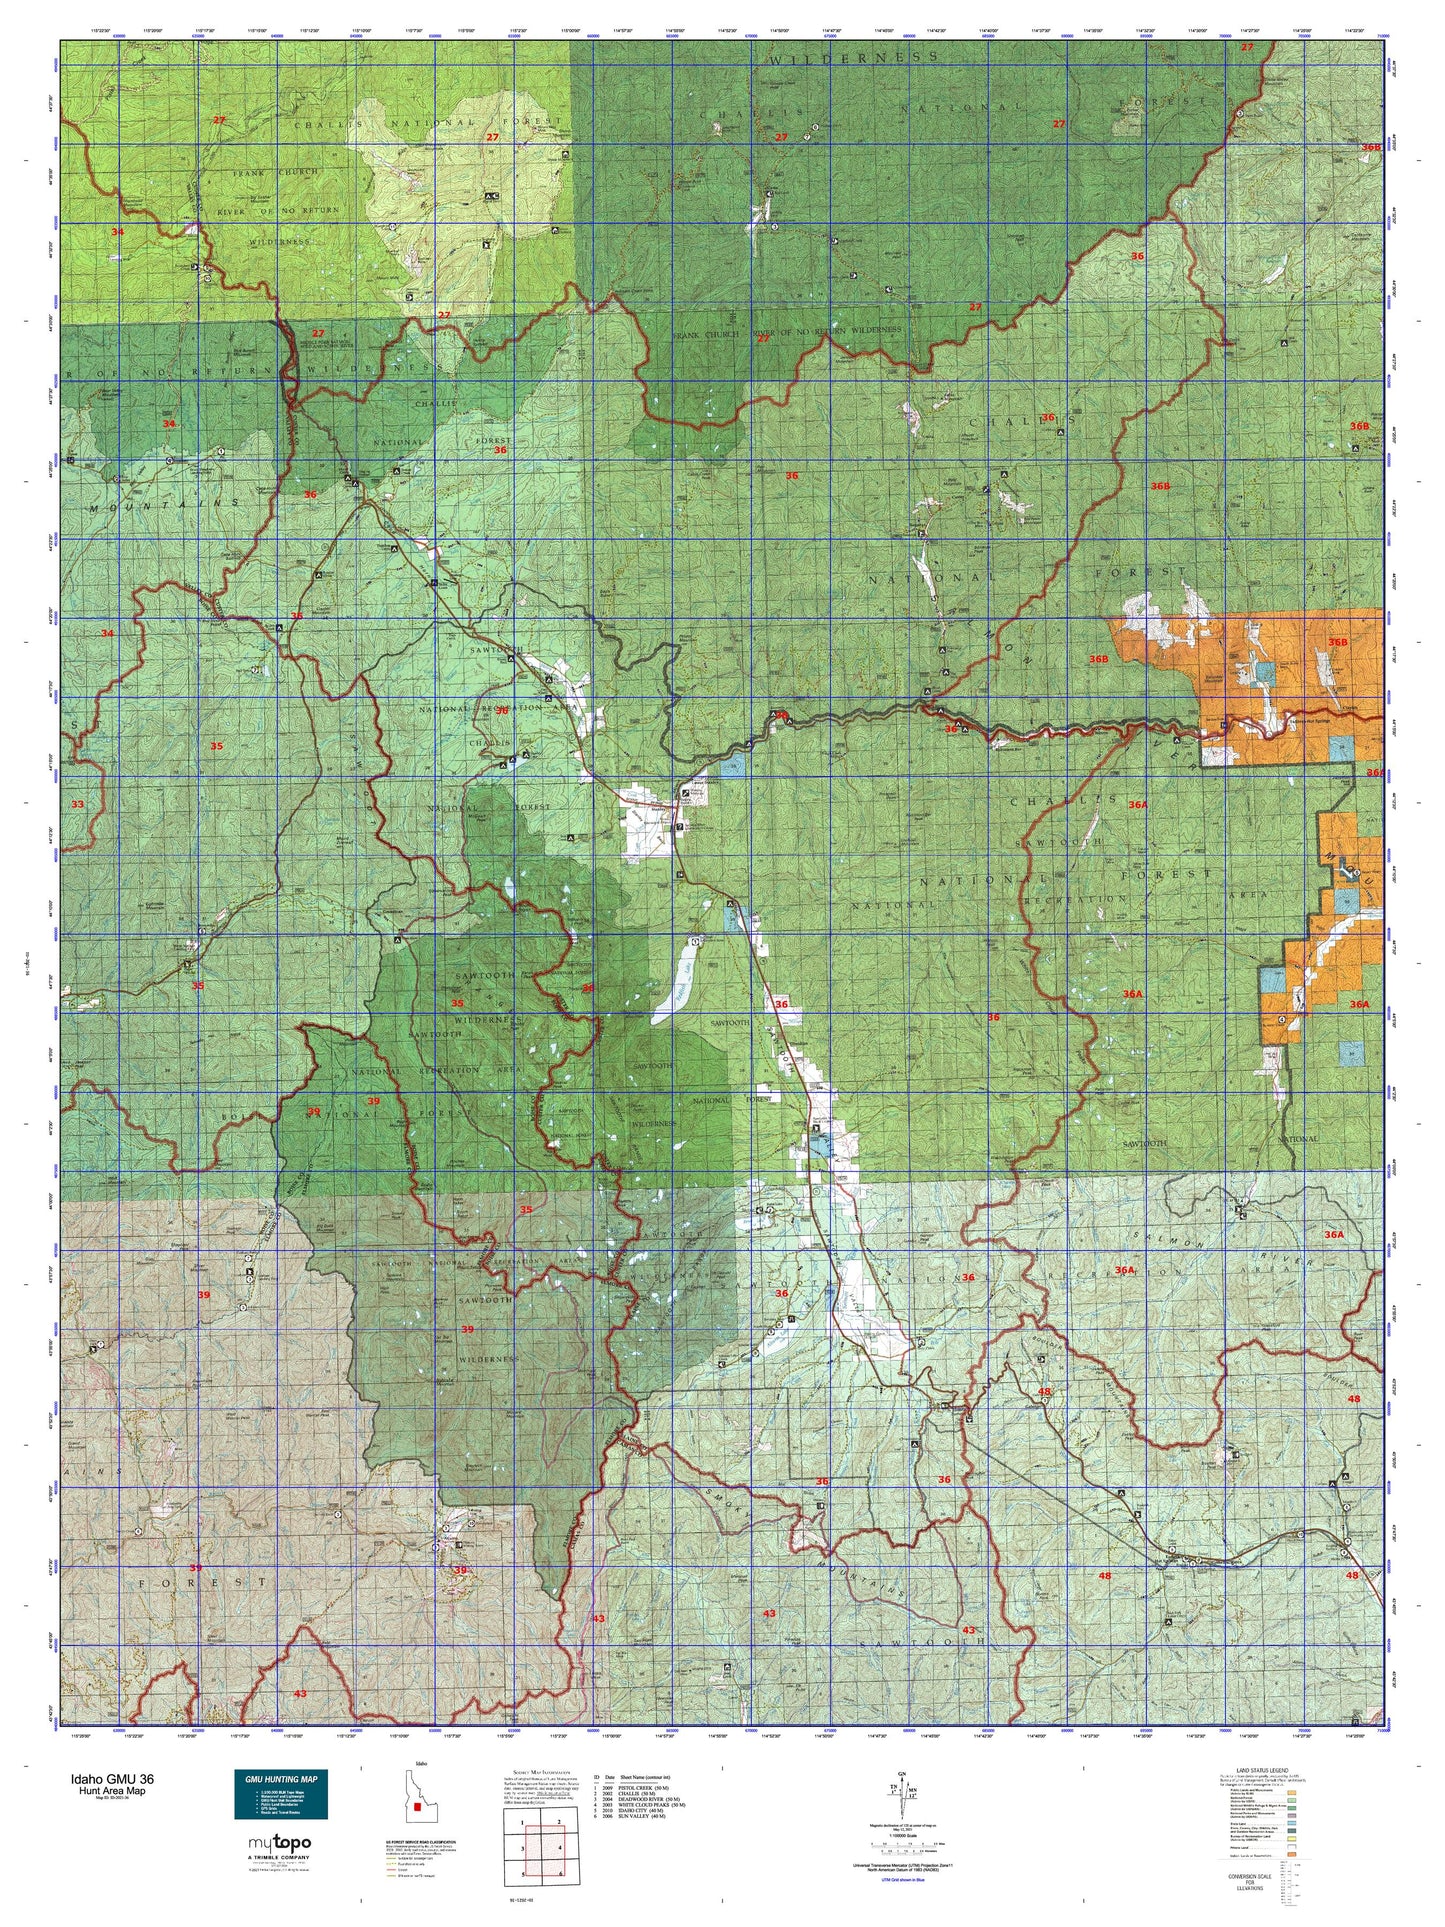 Idaho GMU 36 Map Image